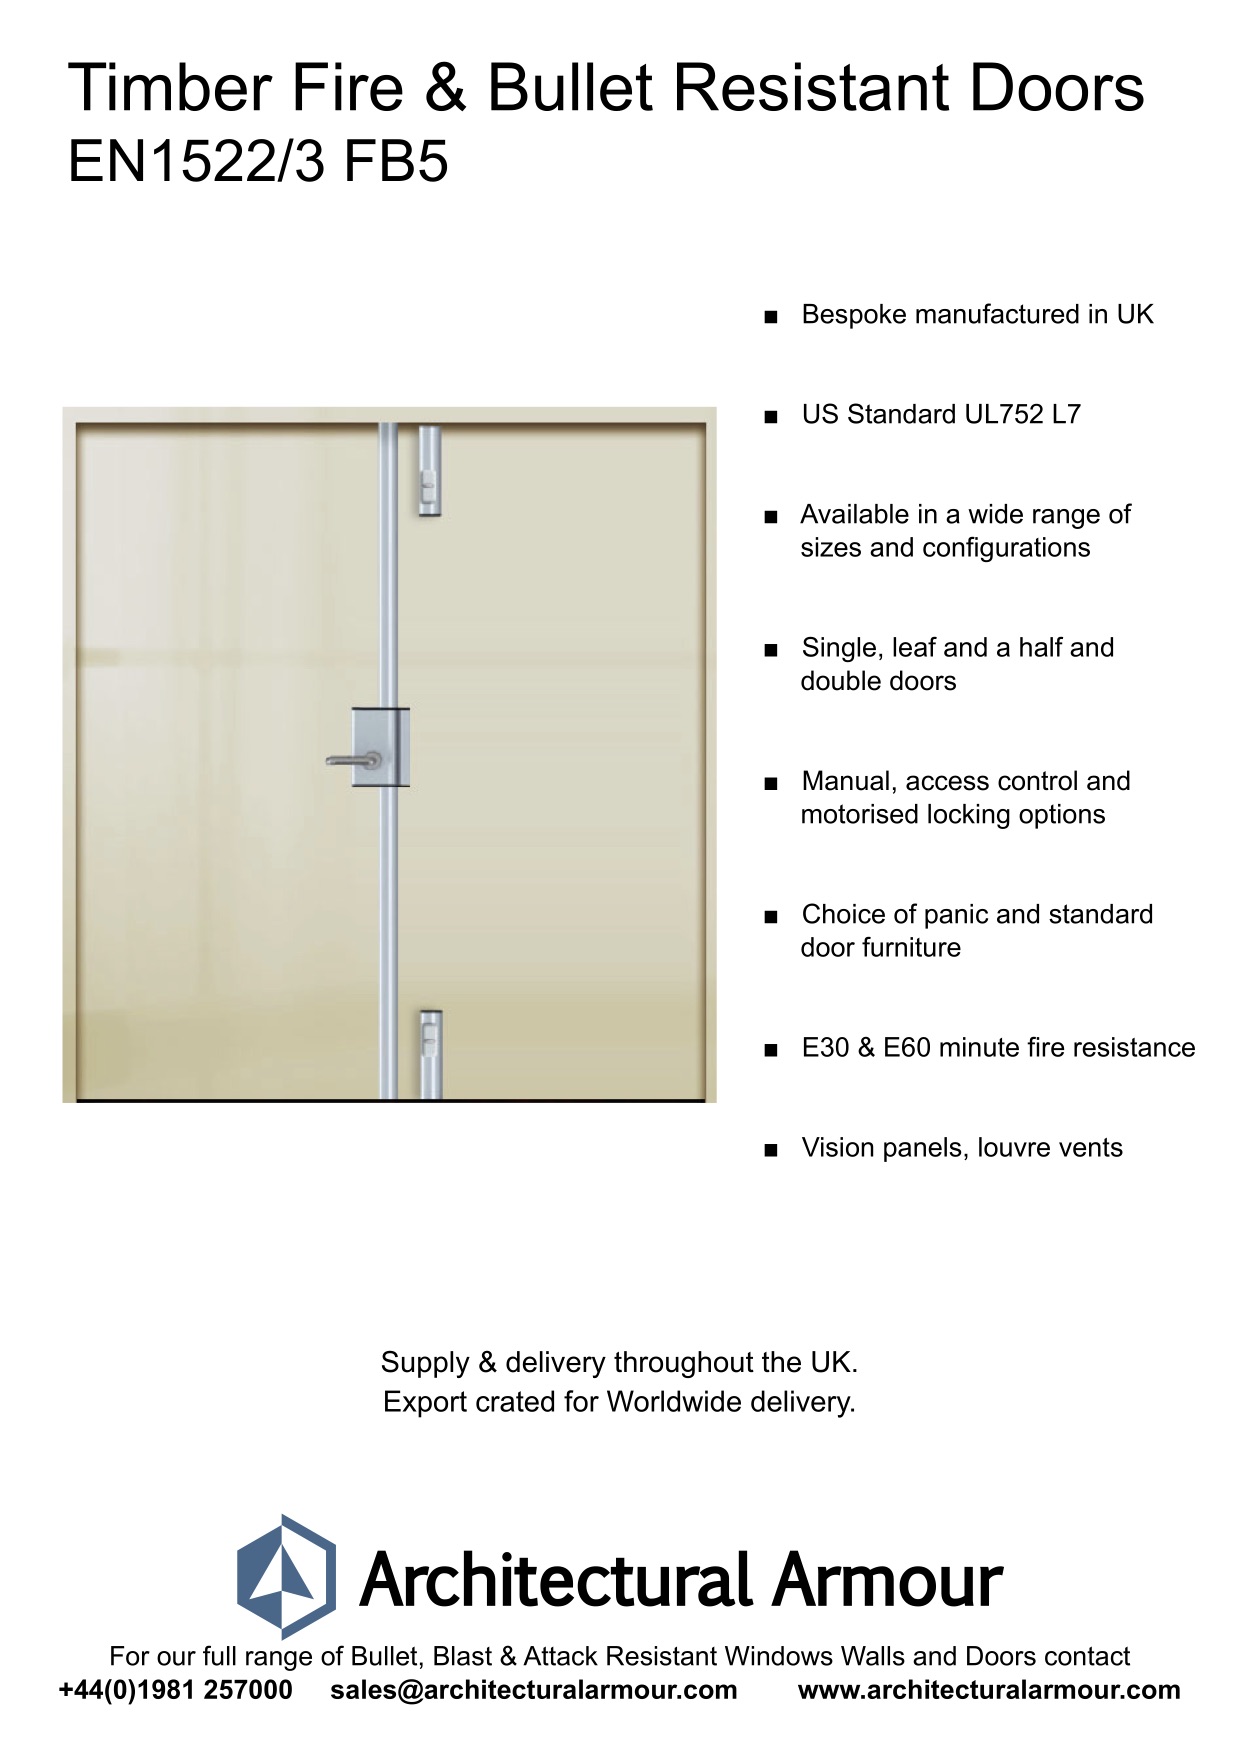 Fire-resistant-and-Bulletproof-Timber-Double-Doors-UK-EN1522-3-FB5